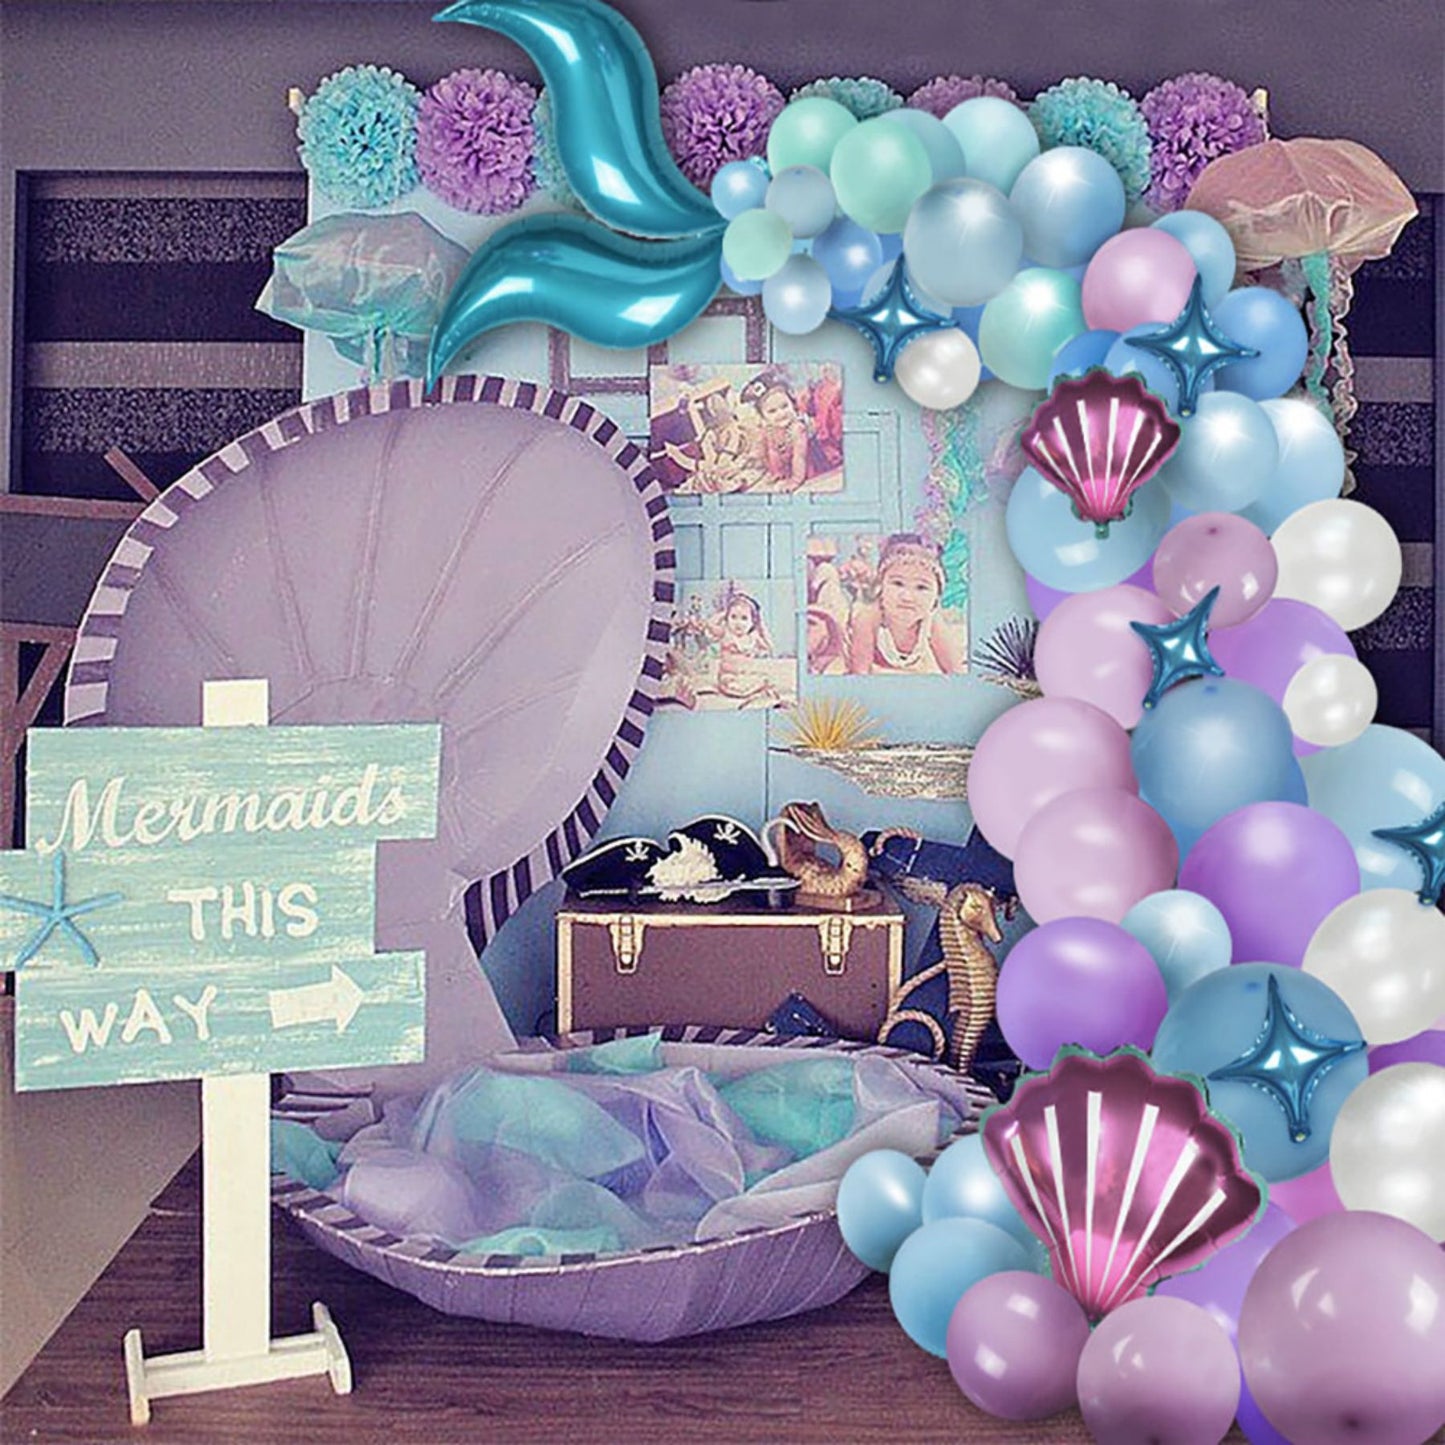 Mermaid tail balloon latex balloon birthday party decorative balloon